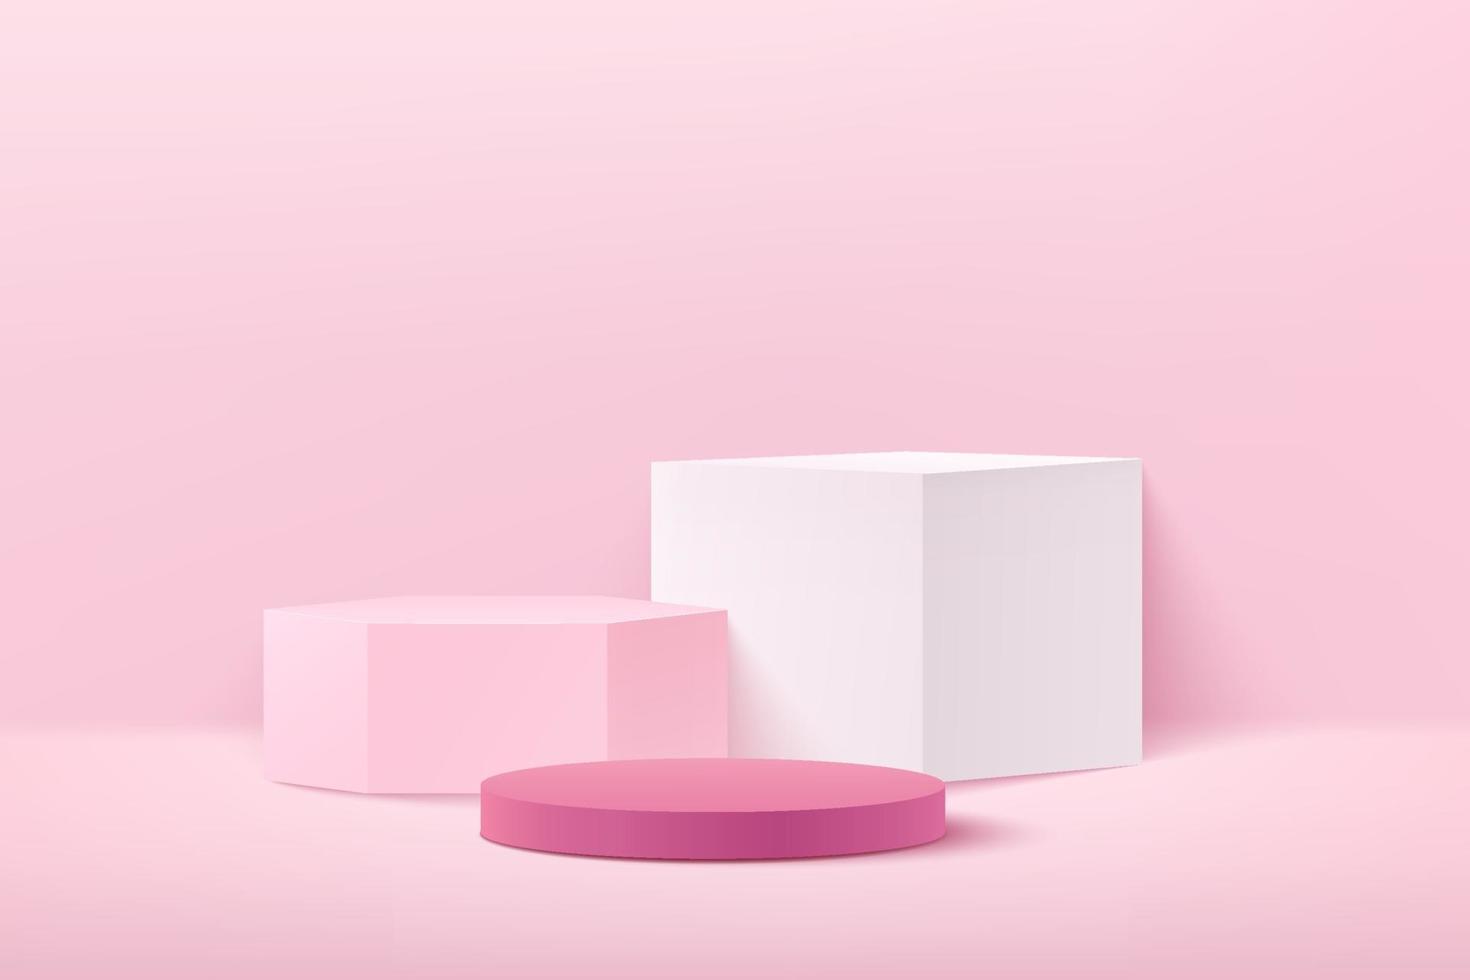 hexágono de cubo abstracto y pantalla redonda para producto en sitio web en moderno. Representación de fondo con podio y escena de pared de textura rosa mínima, representación 3D de forma geométrica en color pastel. vector eps10